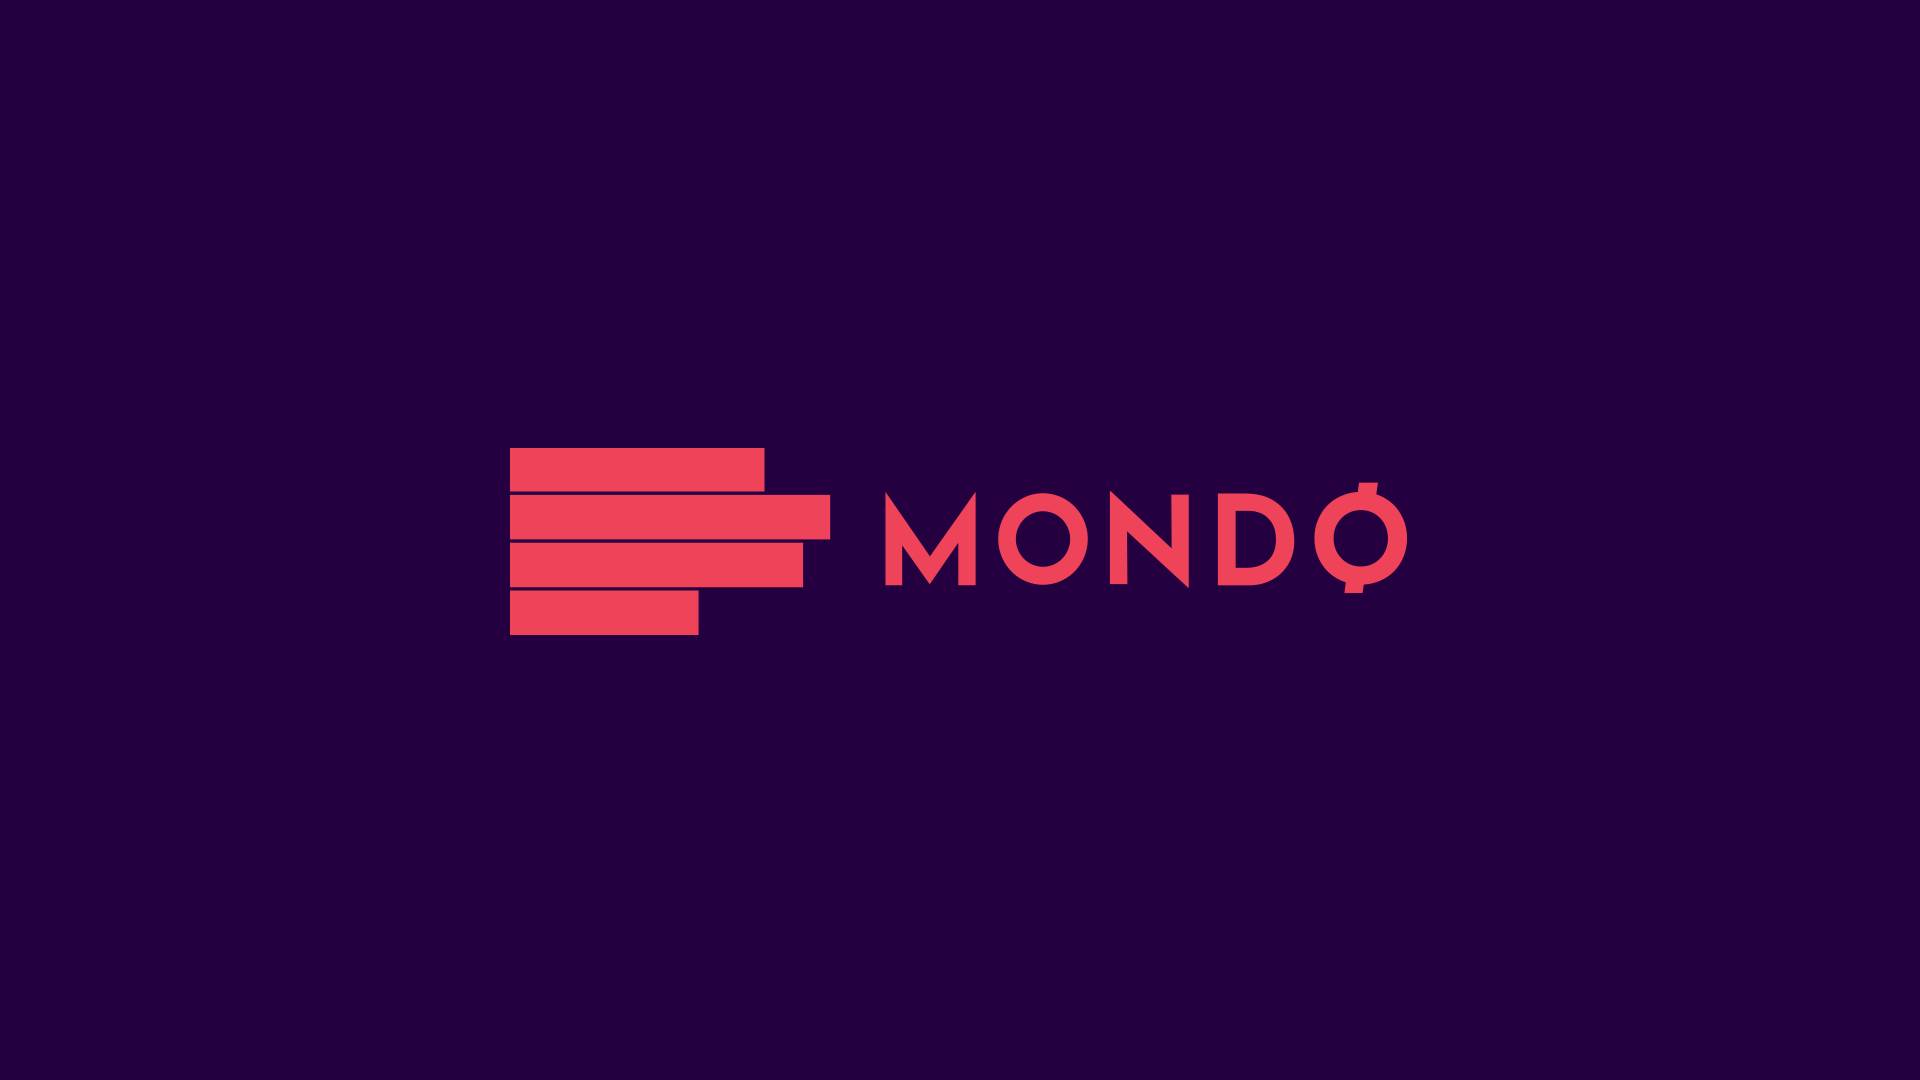  Adria Media Group i Mondo Inc strateški partneri 